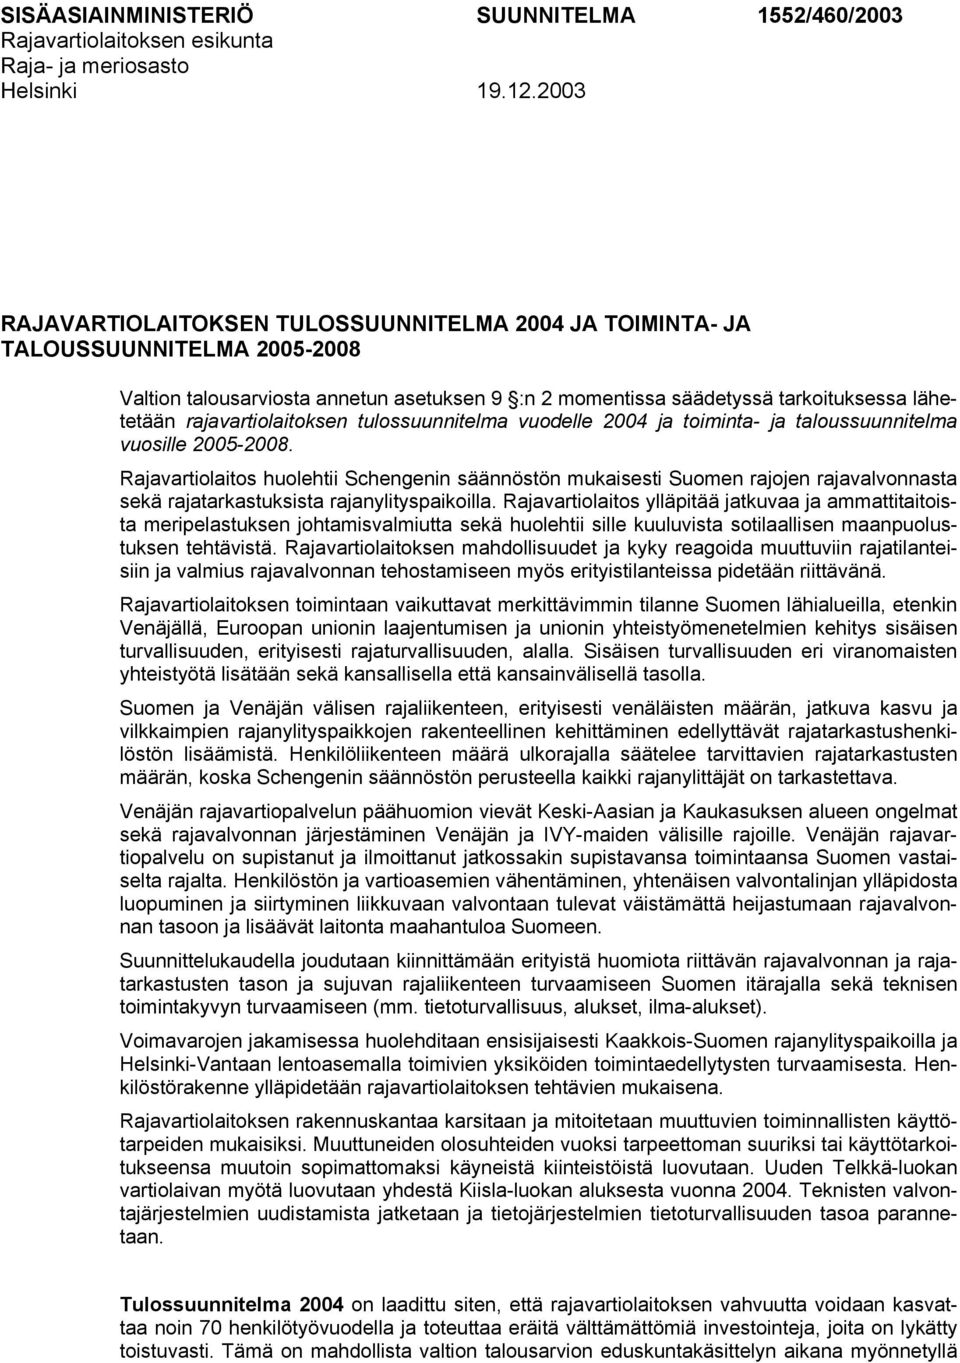 rajavartiolaitoksen tulossuunnitelma vuodelle 2004 ja toiminta- ja taloussuunnitelma vuosille 2005-2008.